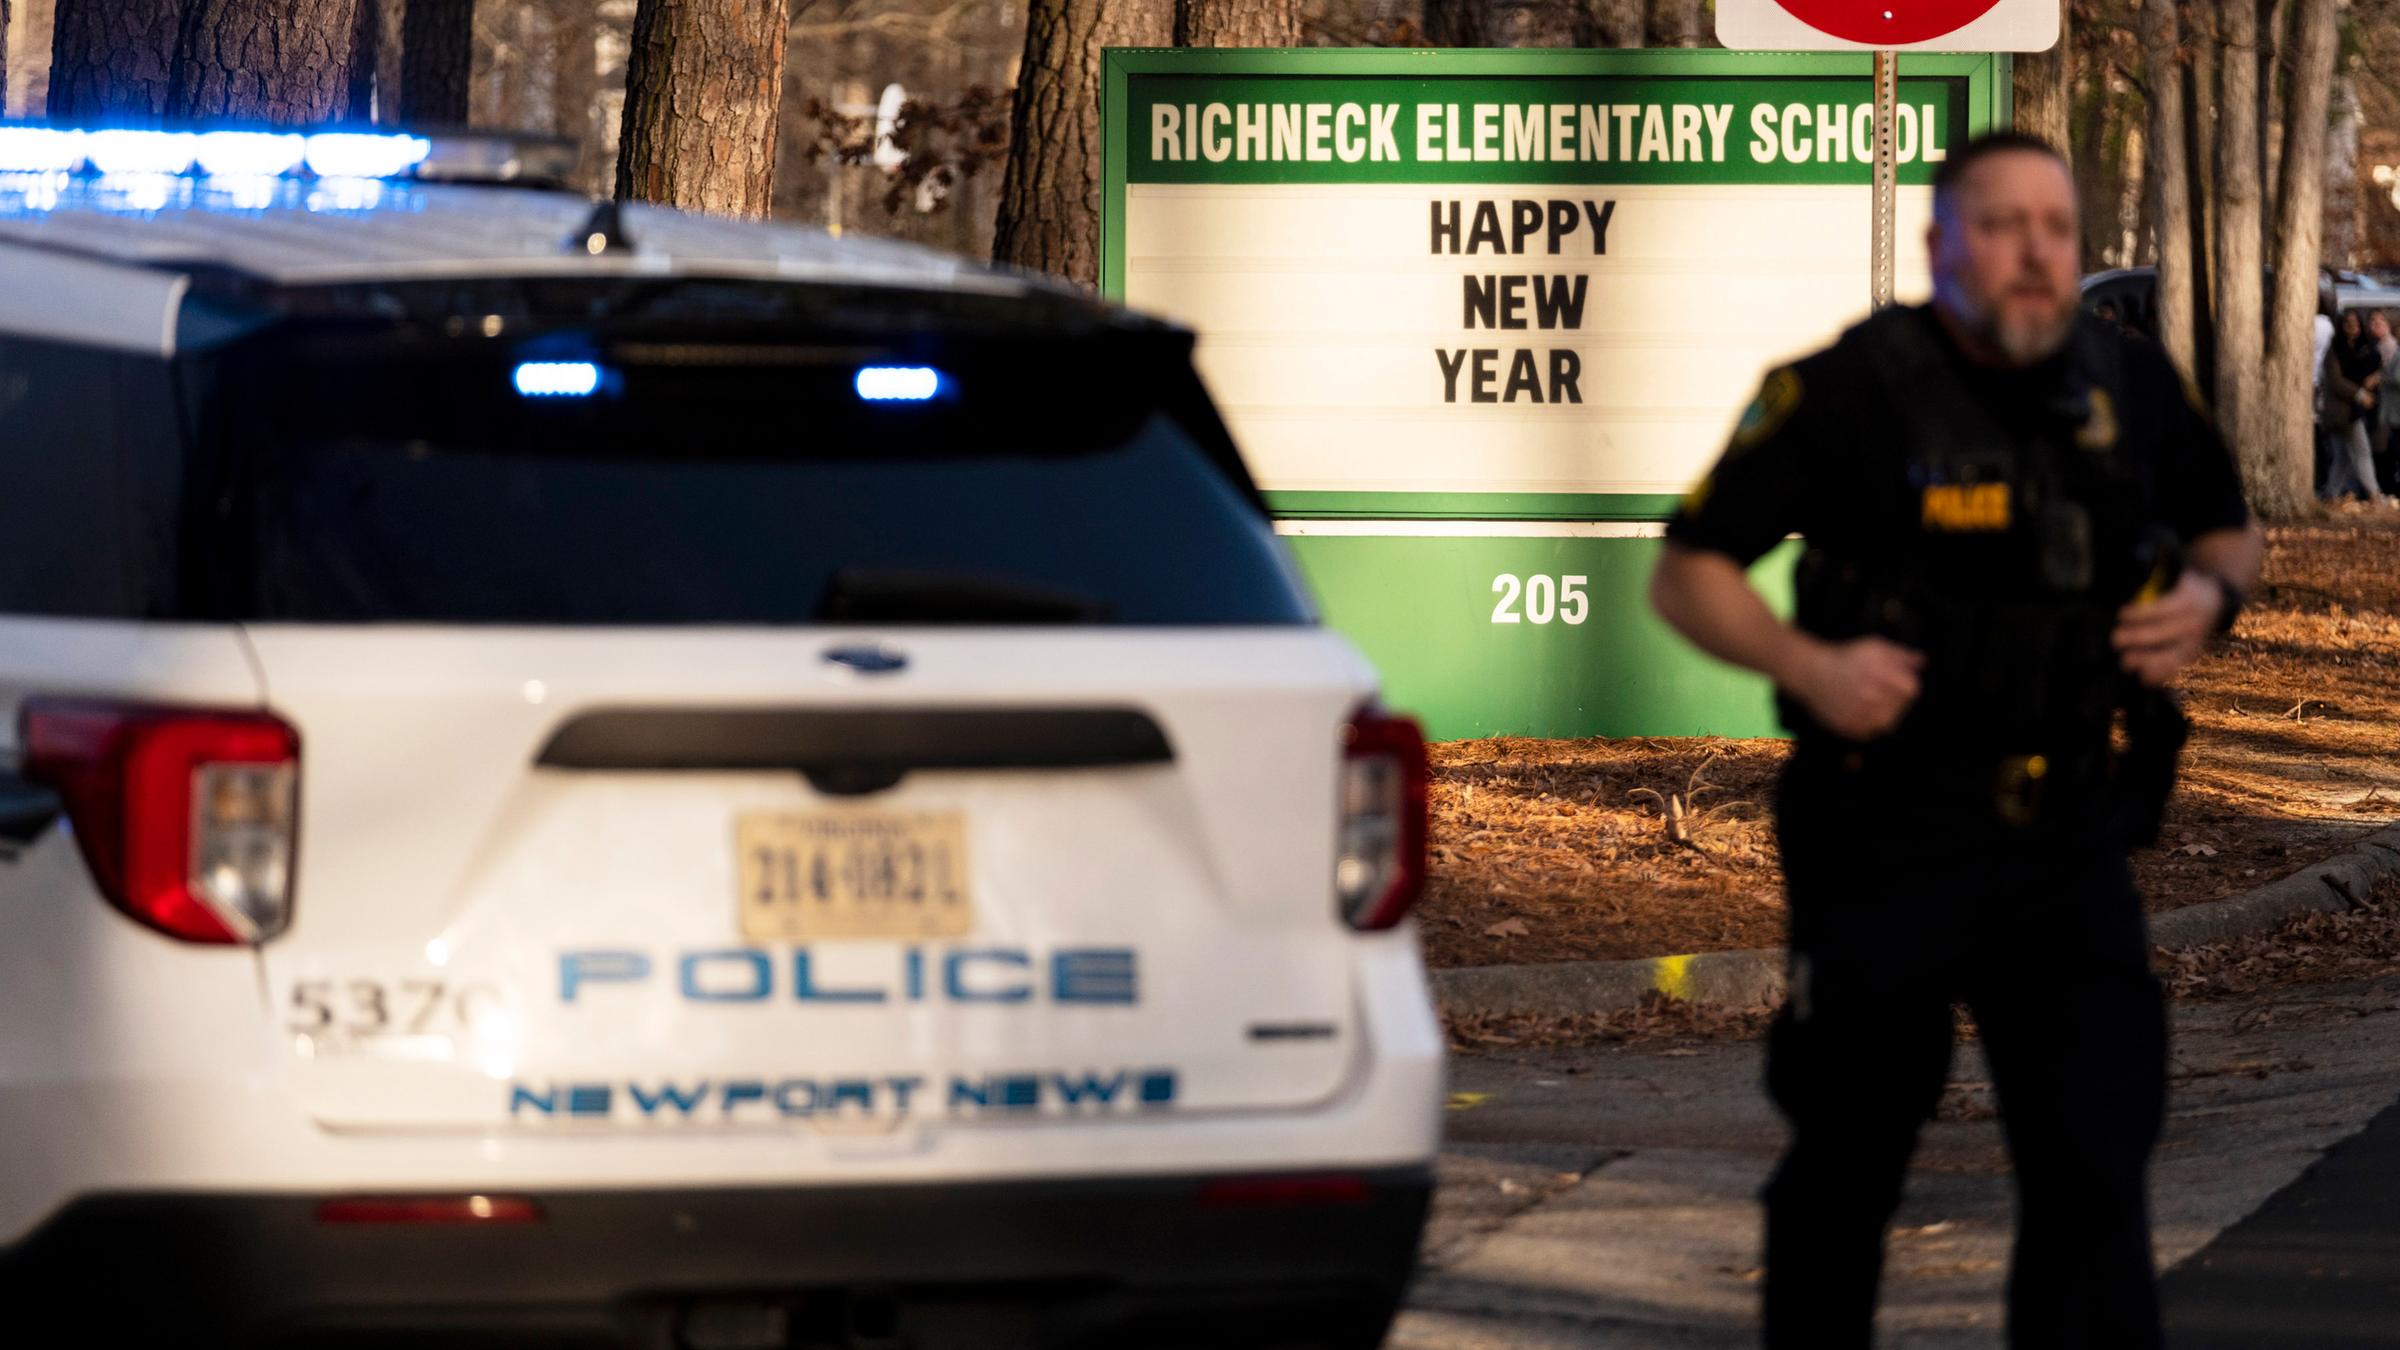 Links: Polizeiauto. Rechts: Polizist steht vor Schild der Richneck-Grundschule mit der Aufschrift "Happy New Year". Newport News, USA.